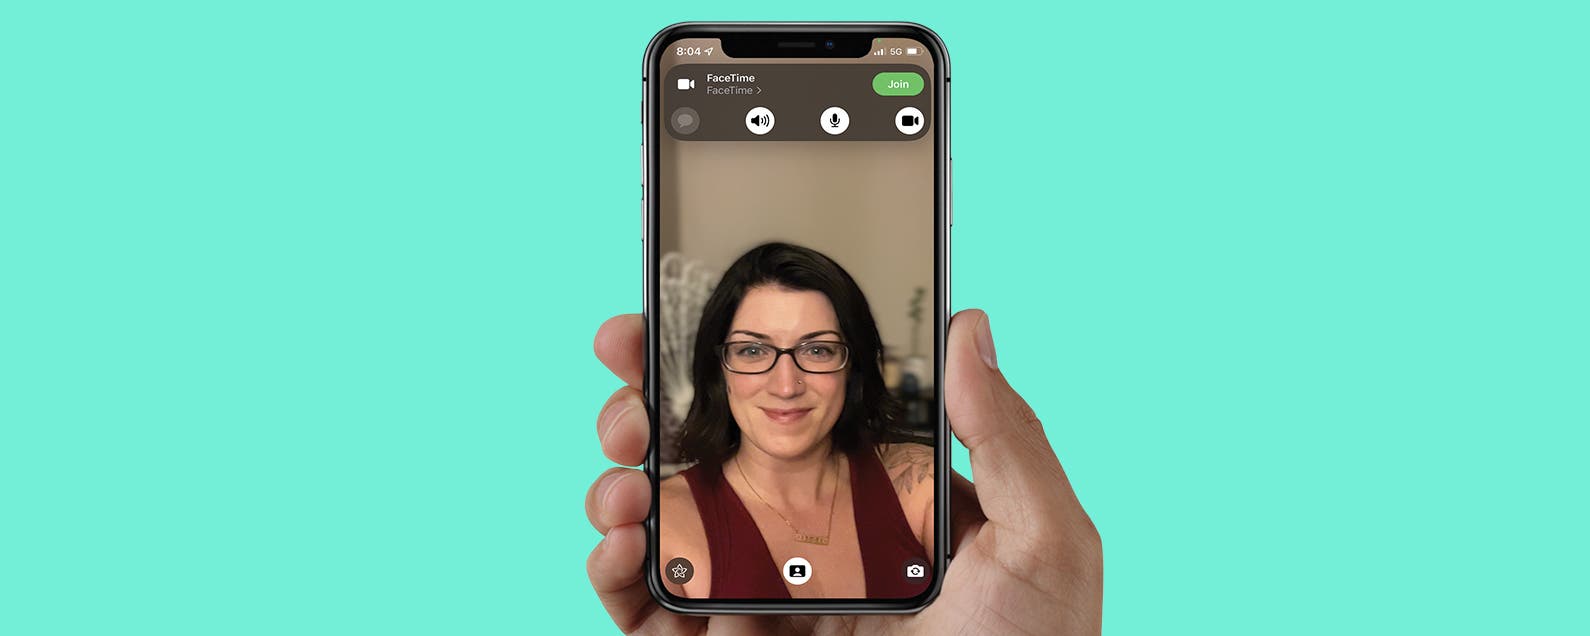 Làm mờ phông nền trên FaceTime với chế độ Portrait: Bạn muốn tạo ra những cuộc gọi FaceTime chuyên nghiệp và ấn tượng hơn? Hãy xem các hướng dẫn trong hình ảnh này để tìm hiểu cách làm mờ phông nền trong chế độ Portrait. Với các bước đơn giản và dễ hiểu, bạn sẽ có thể tạo ra những cuộc gọi FaceTime chất lượng cao như một chuyên gia.